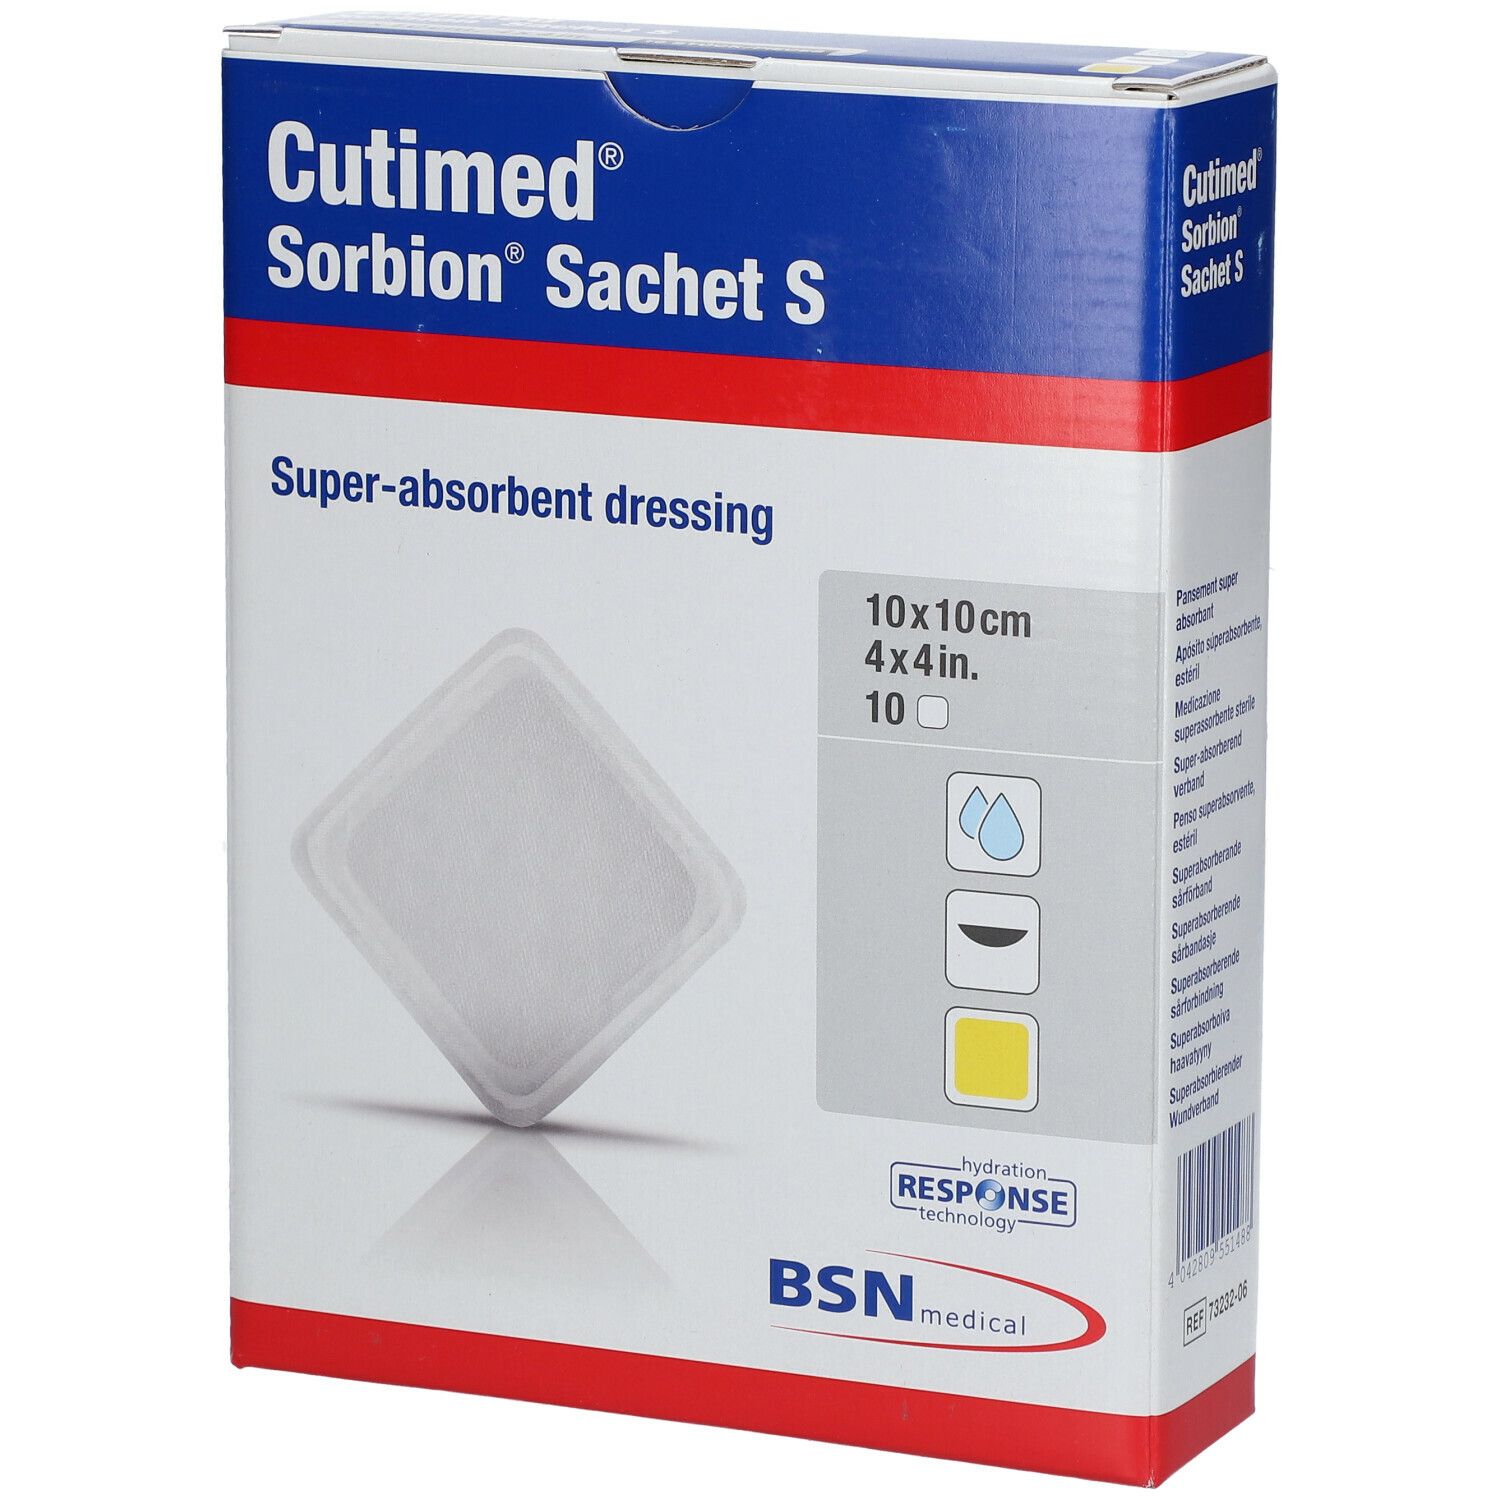 Cutimed Sorbion Sachet S 10x10cm 7323206